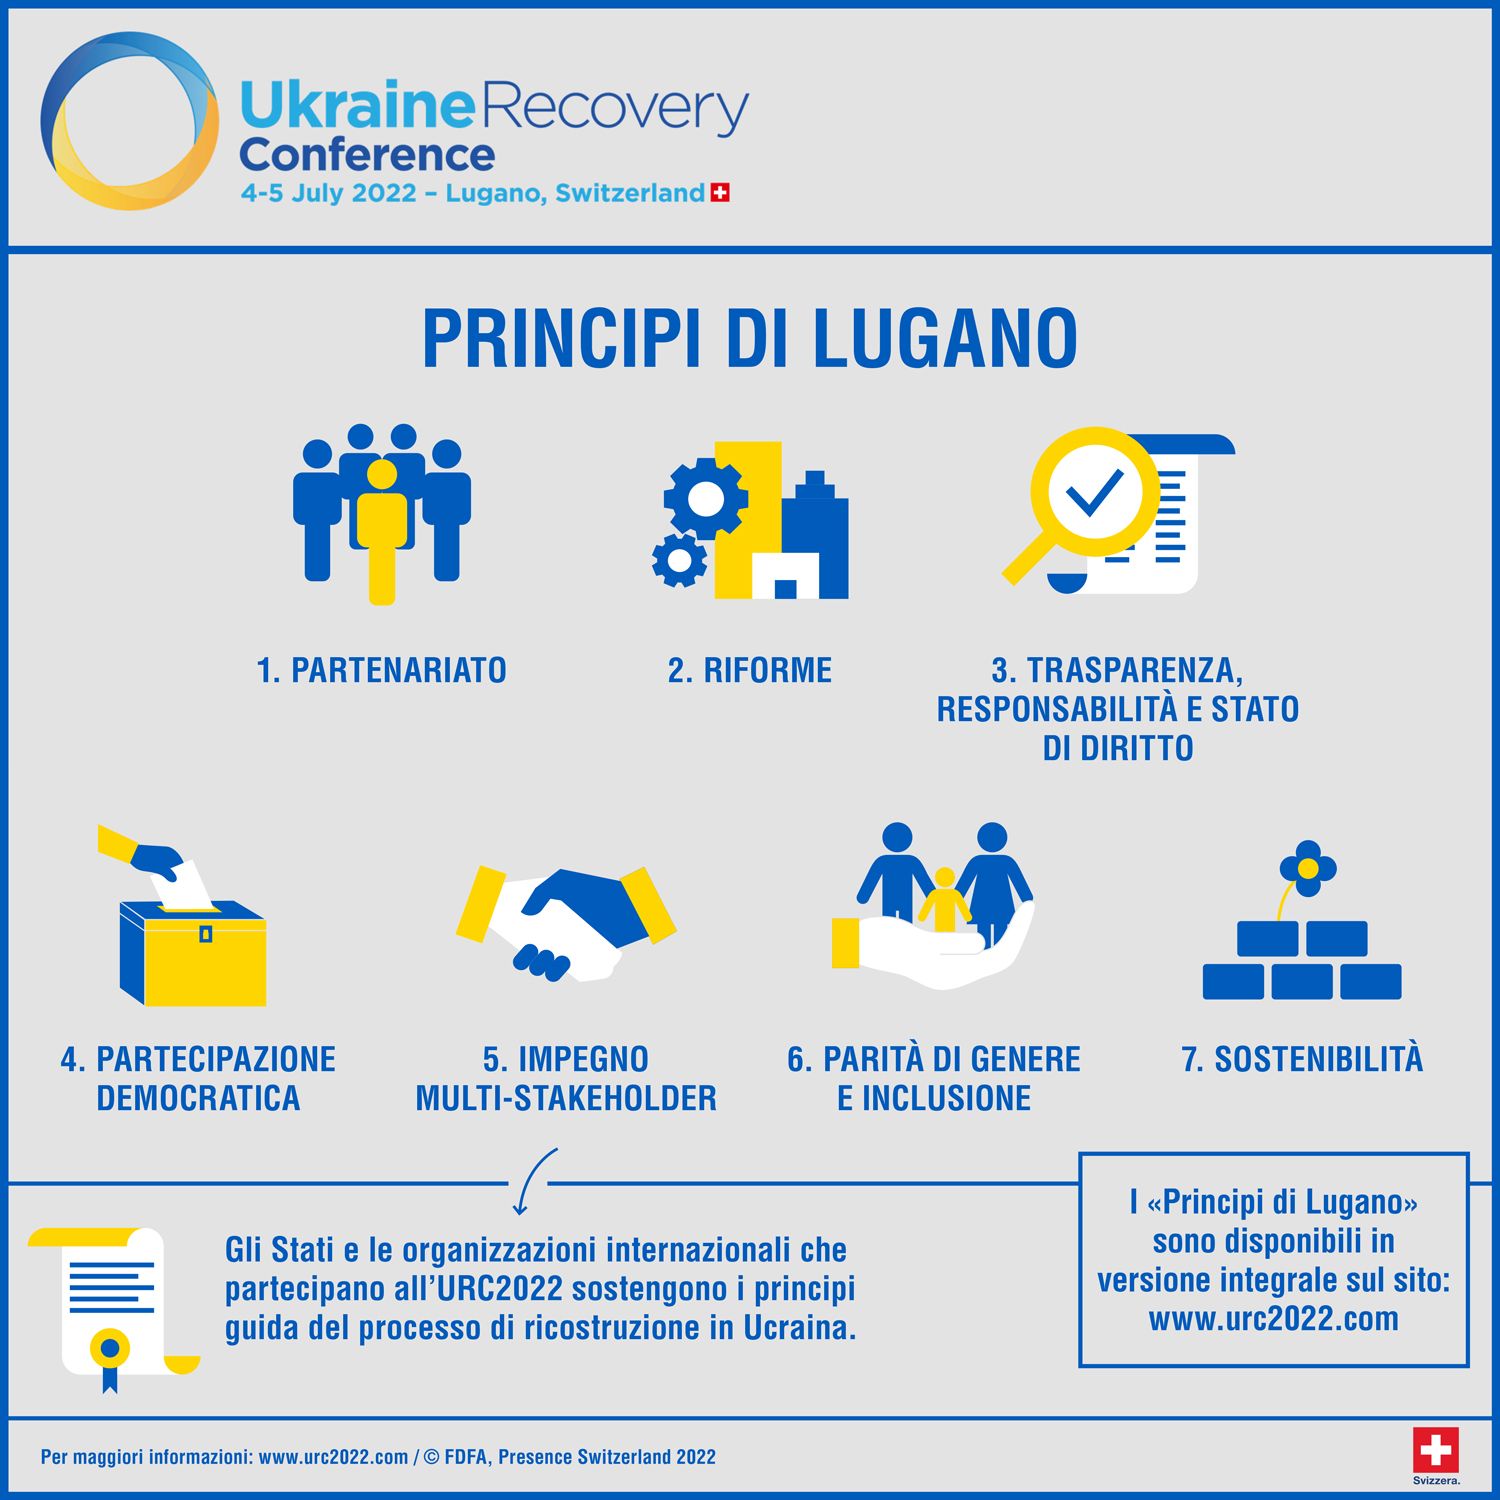 L’infografica dei “Principi di Lugano” definiti nel corso della “Ukraine Recovery Conference” di Lugano del 4 e 5 luglio 2022 (in lingua italiana)